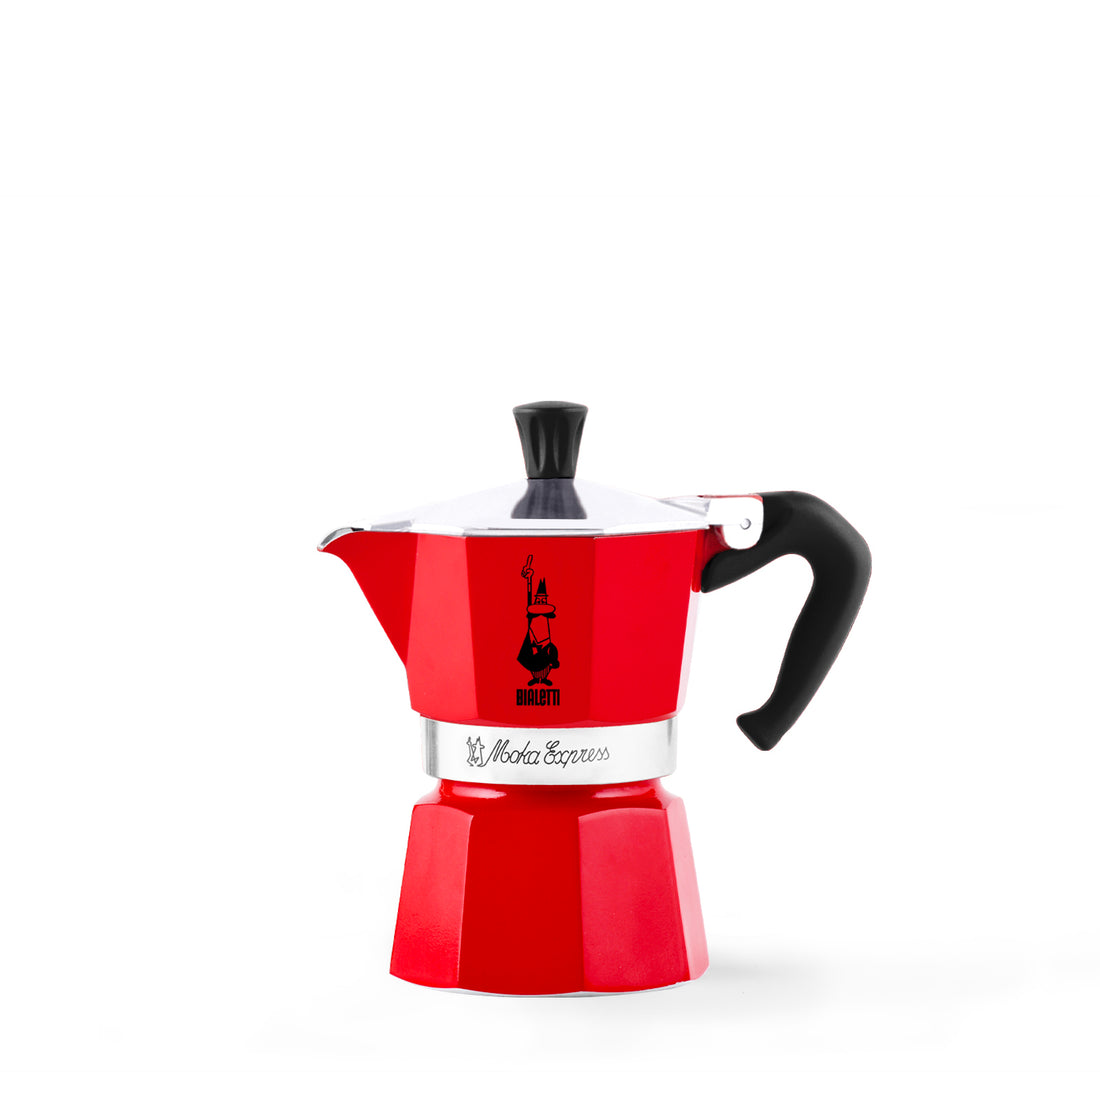 Bialetti Moka Express Red - Coffeeworkz